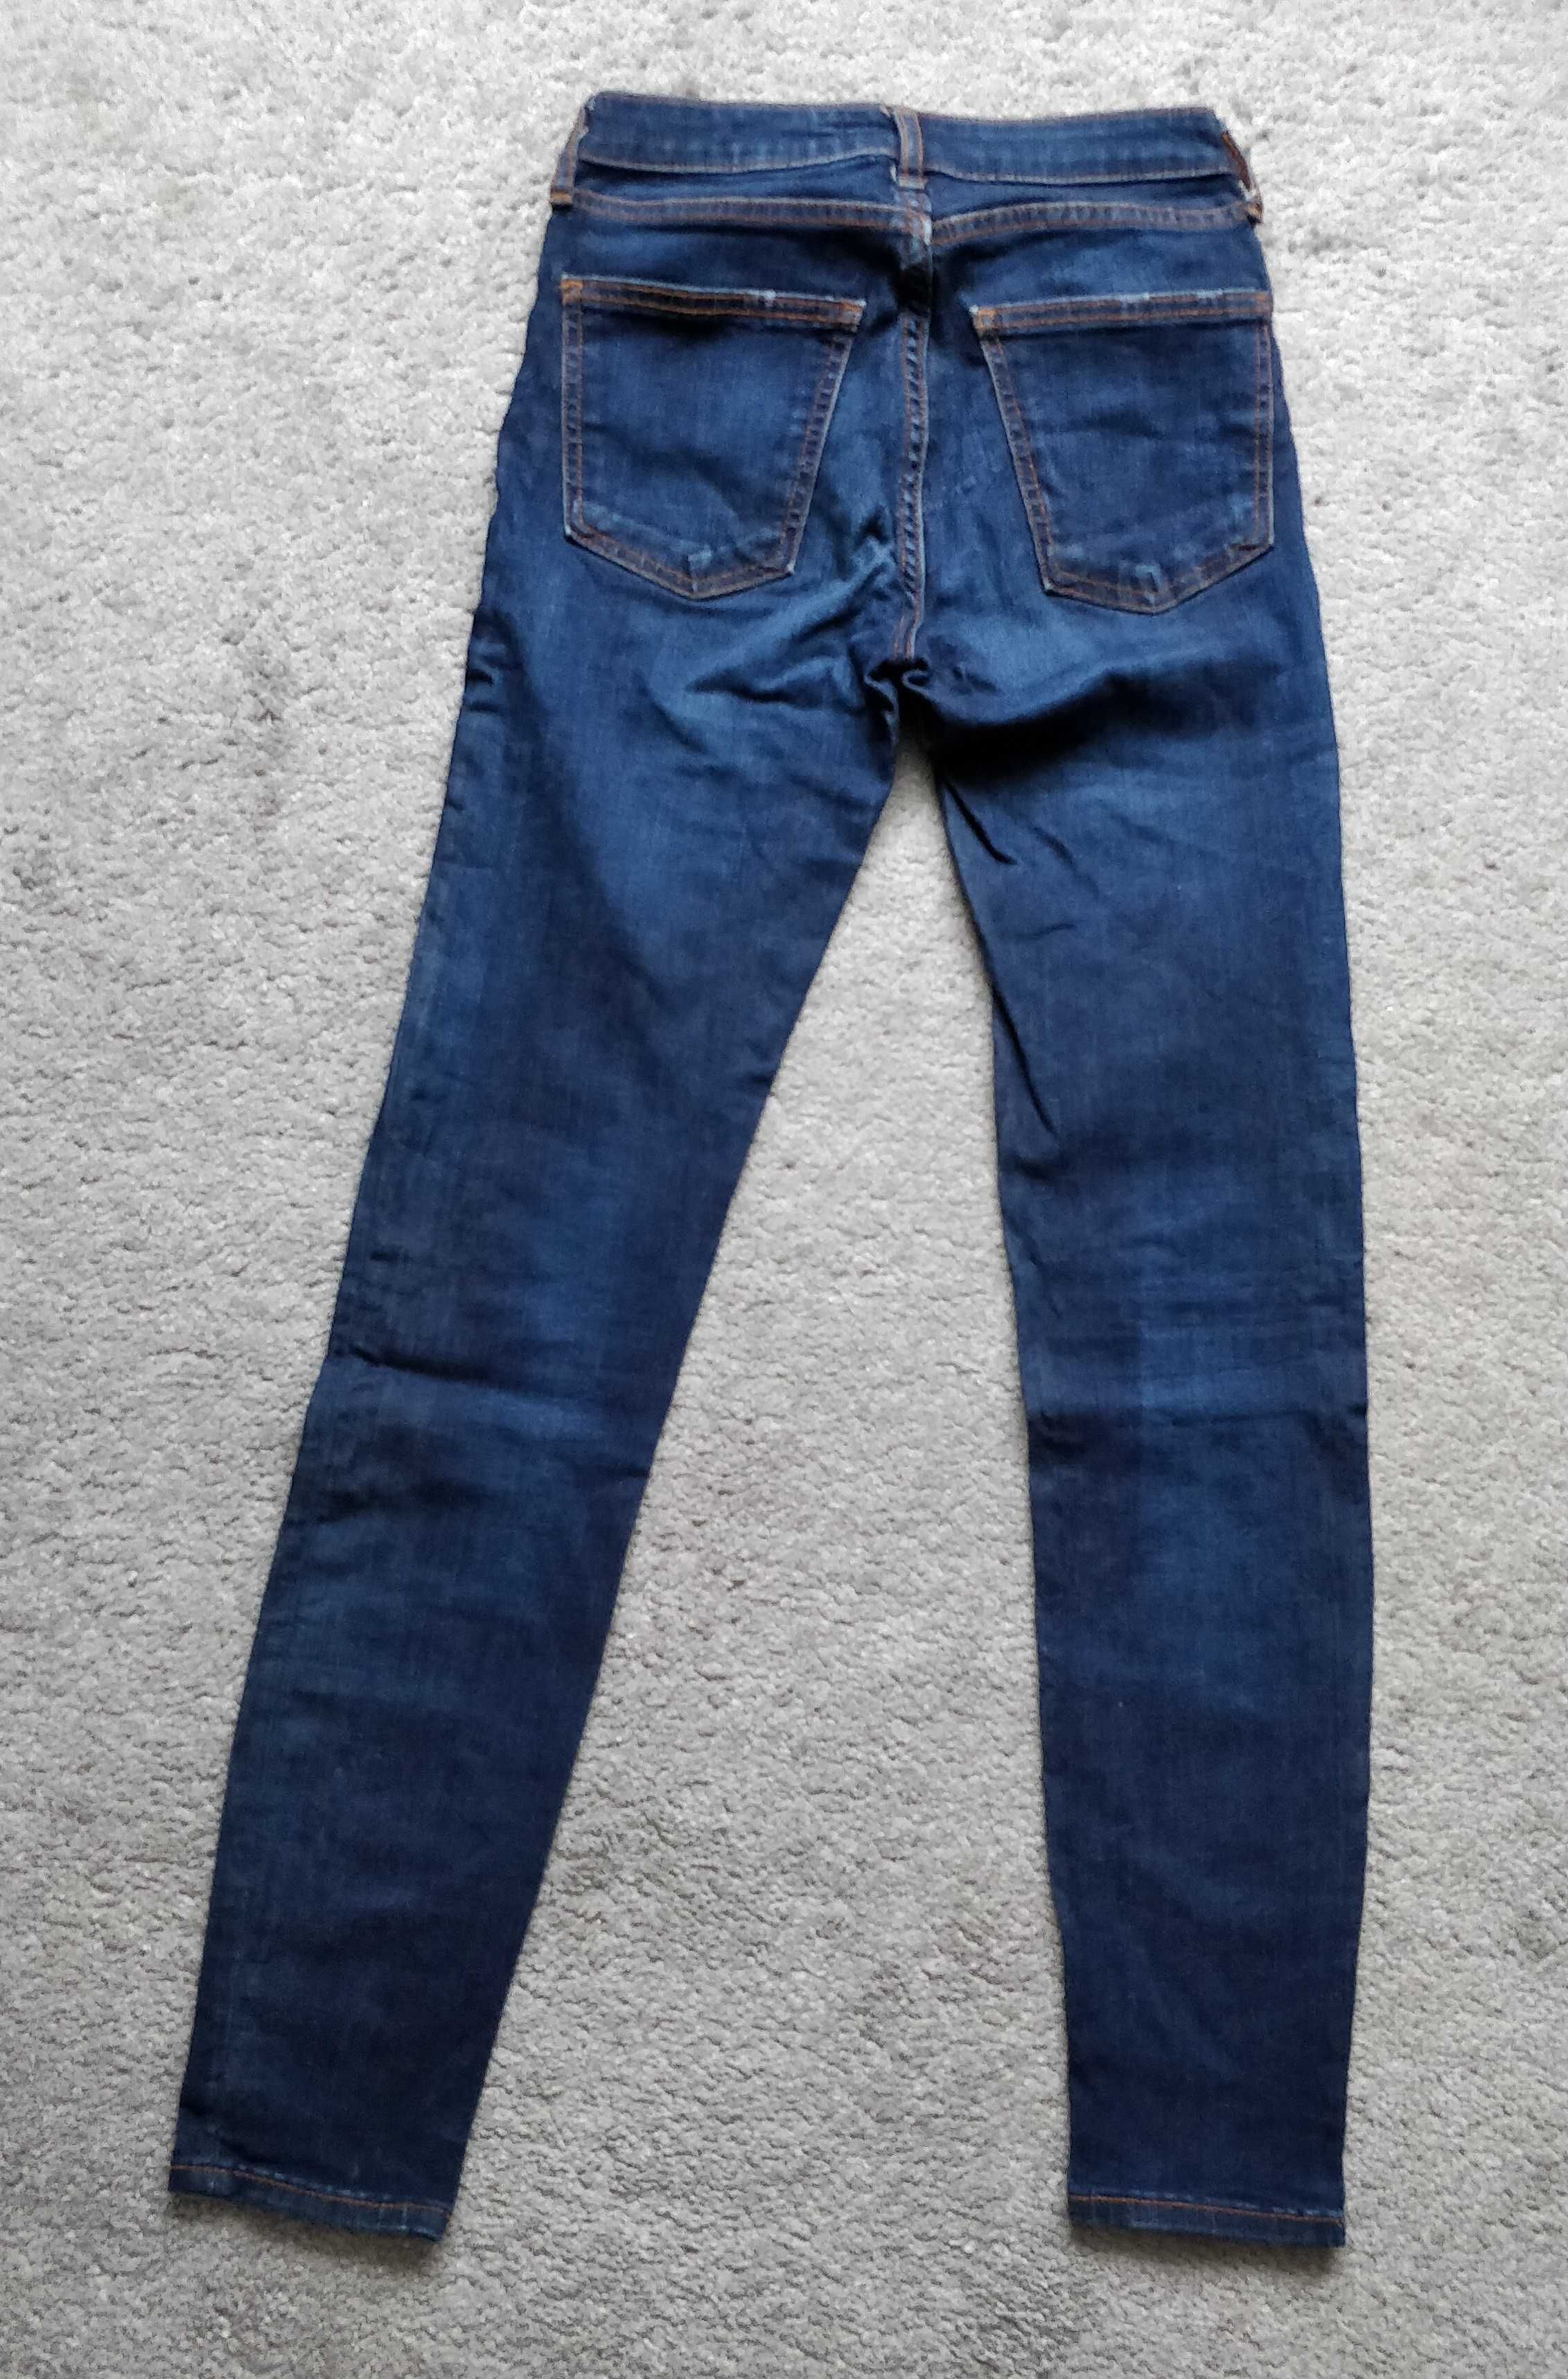 Spodnie ZARA jeansowe, rozmiar 34, dżinsowe, dziewczęce, skinny